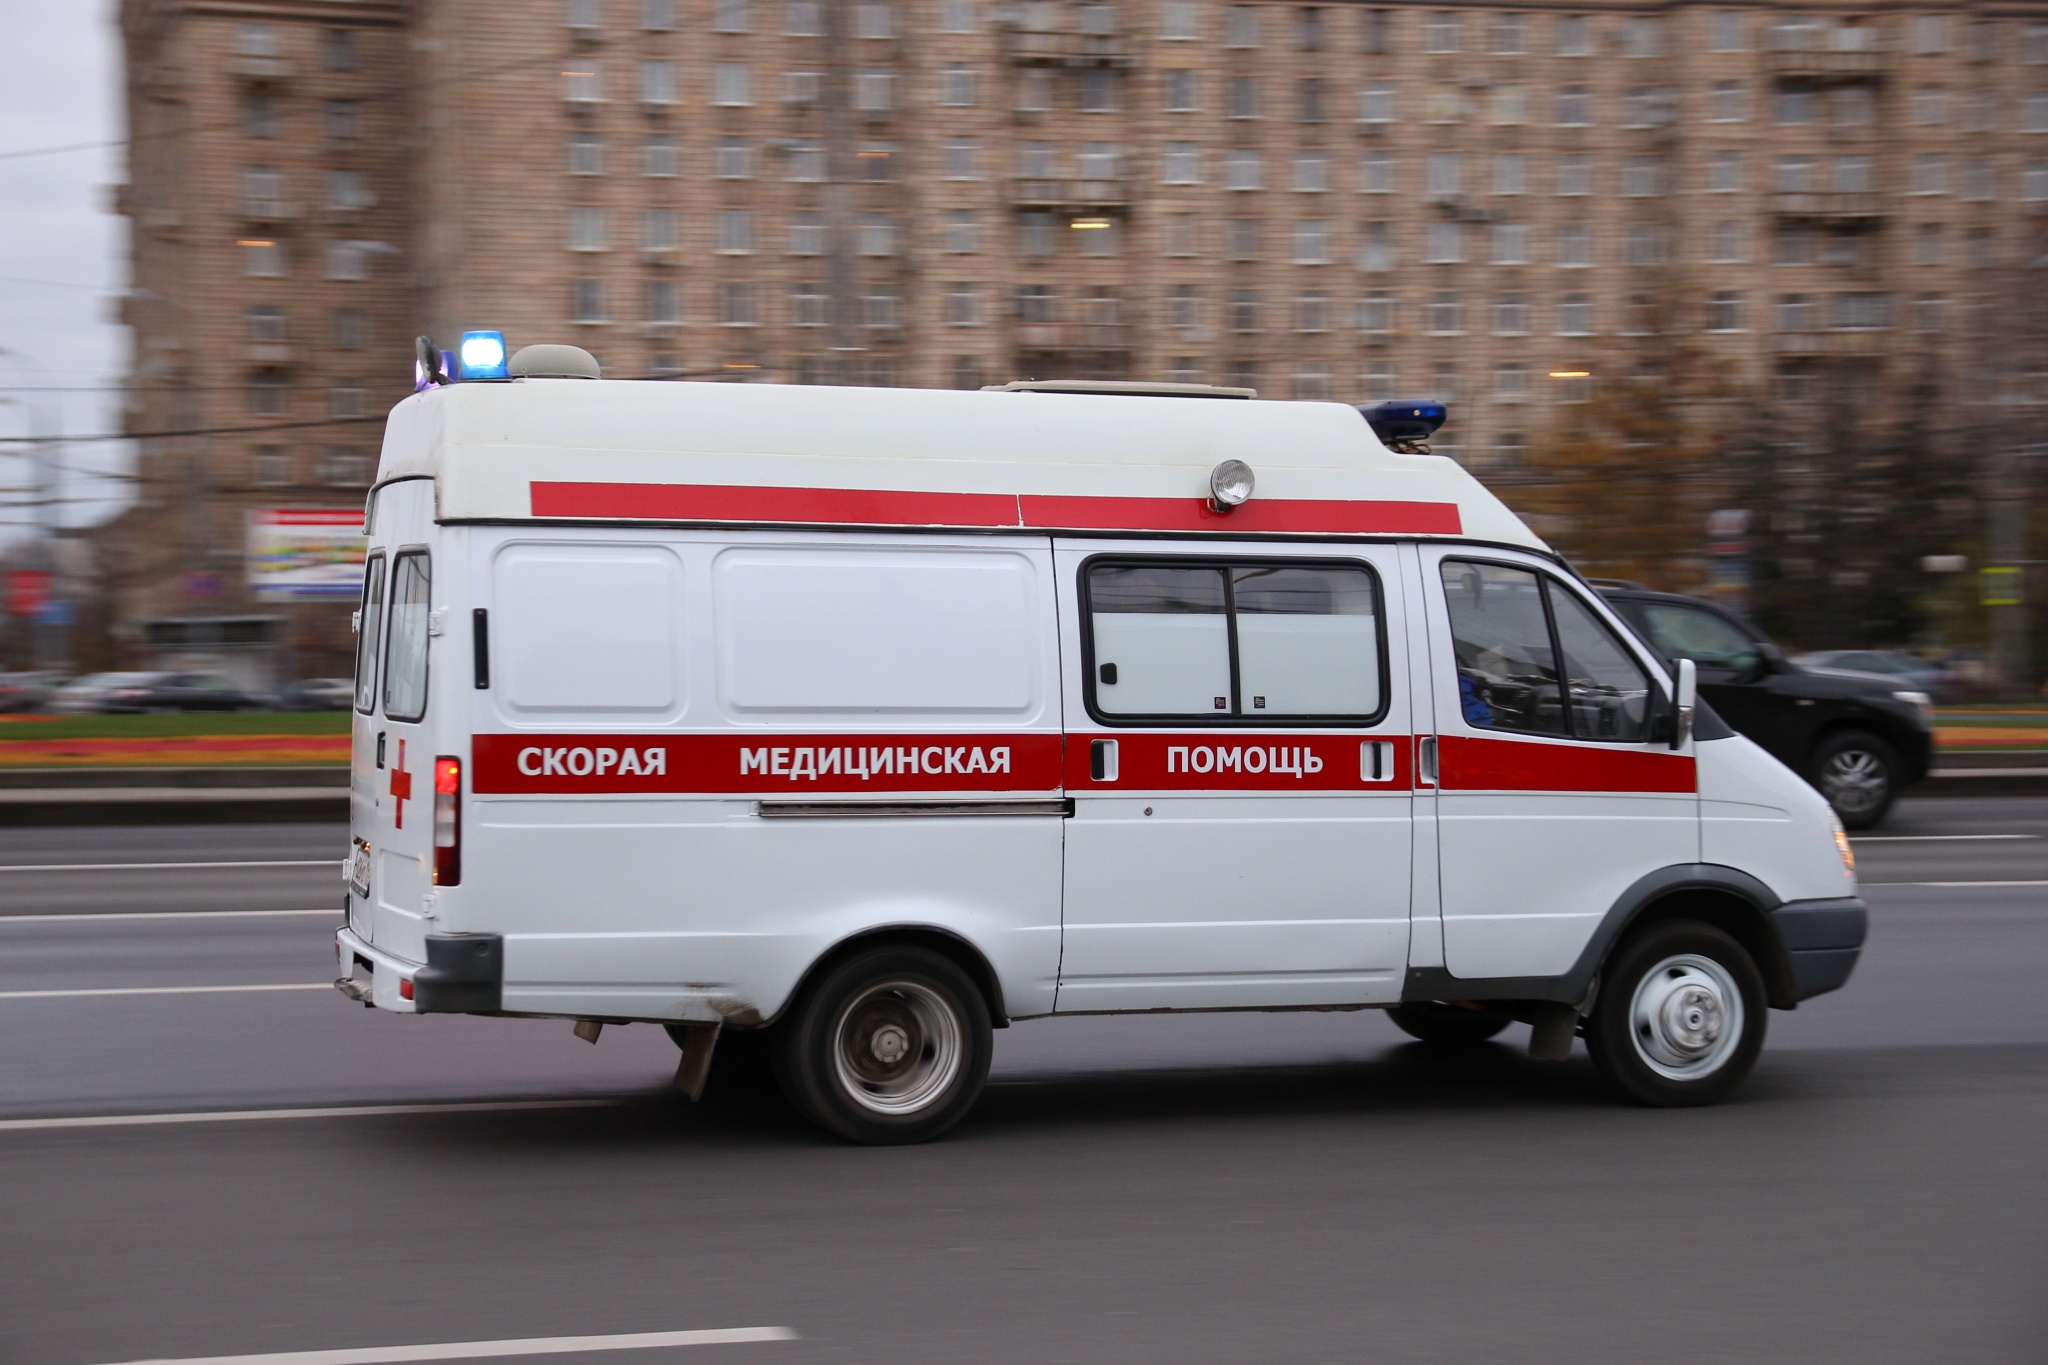 В Саратовской области после новогодней серии нападений на медработников объявлен «месячник вежливости»